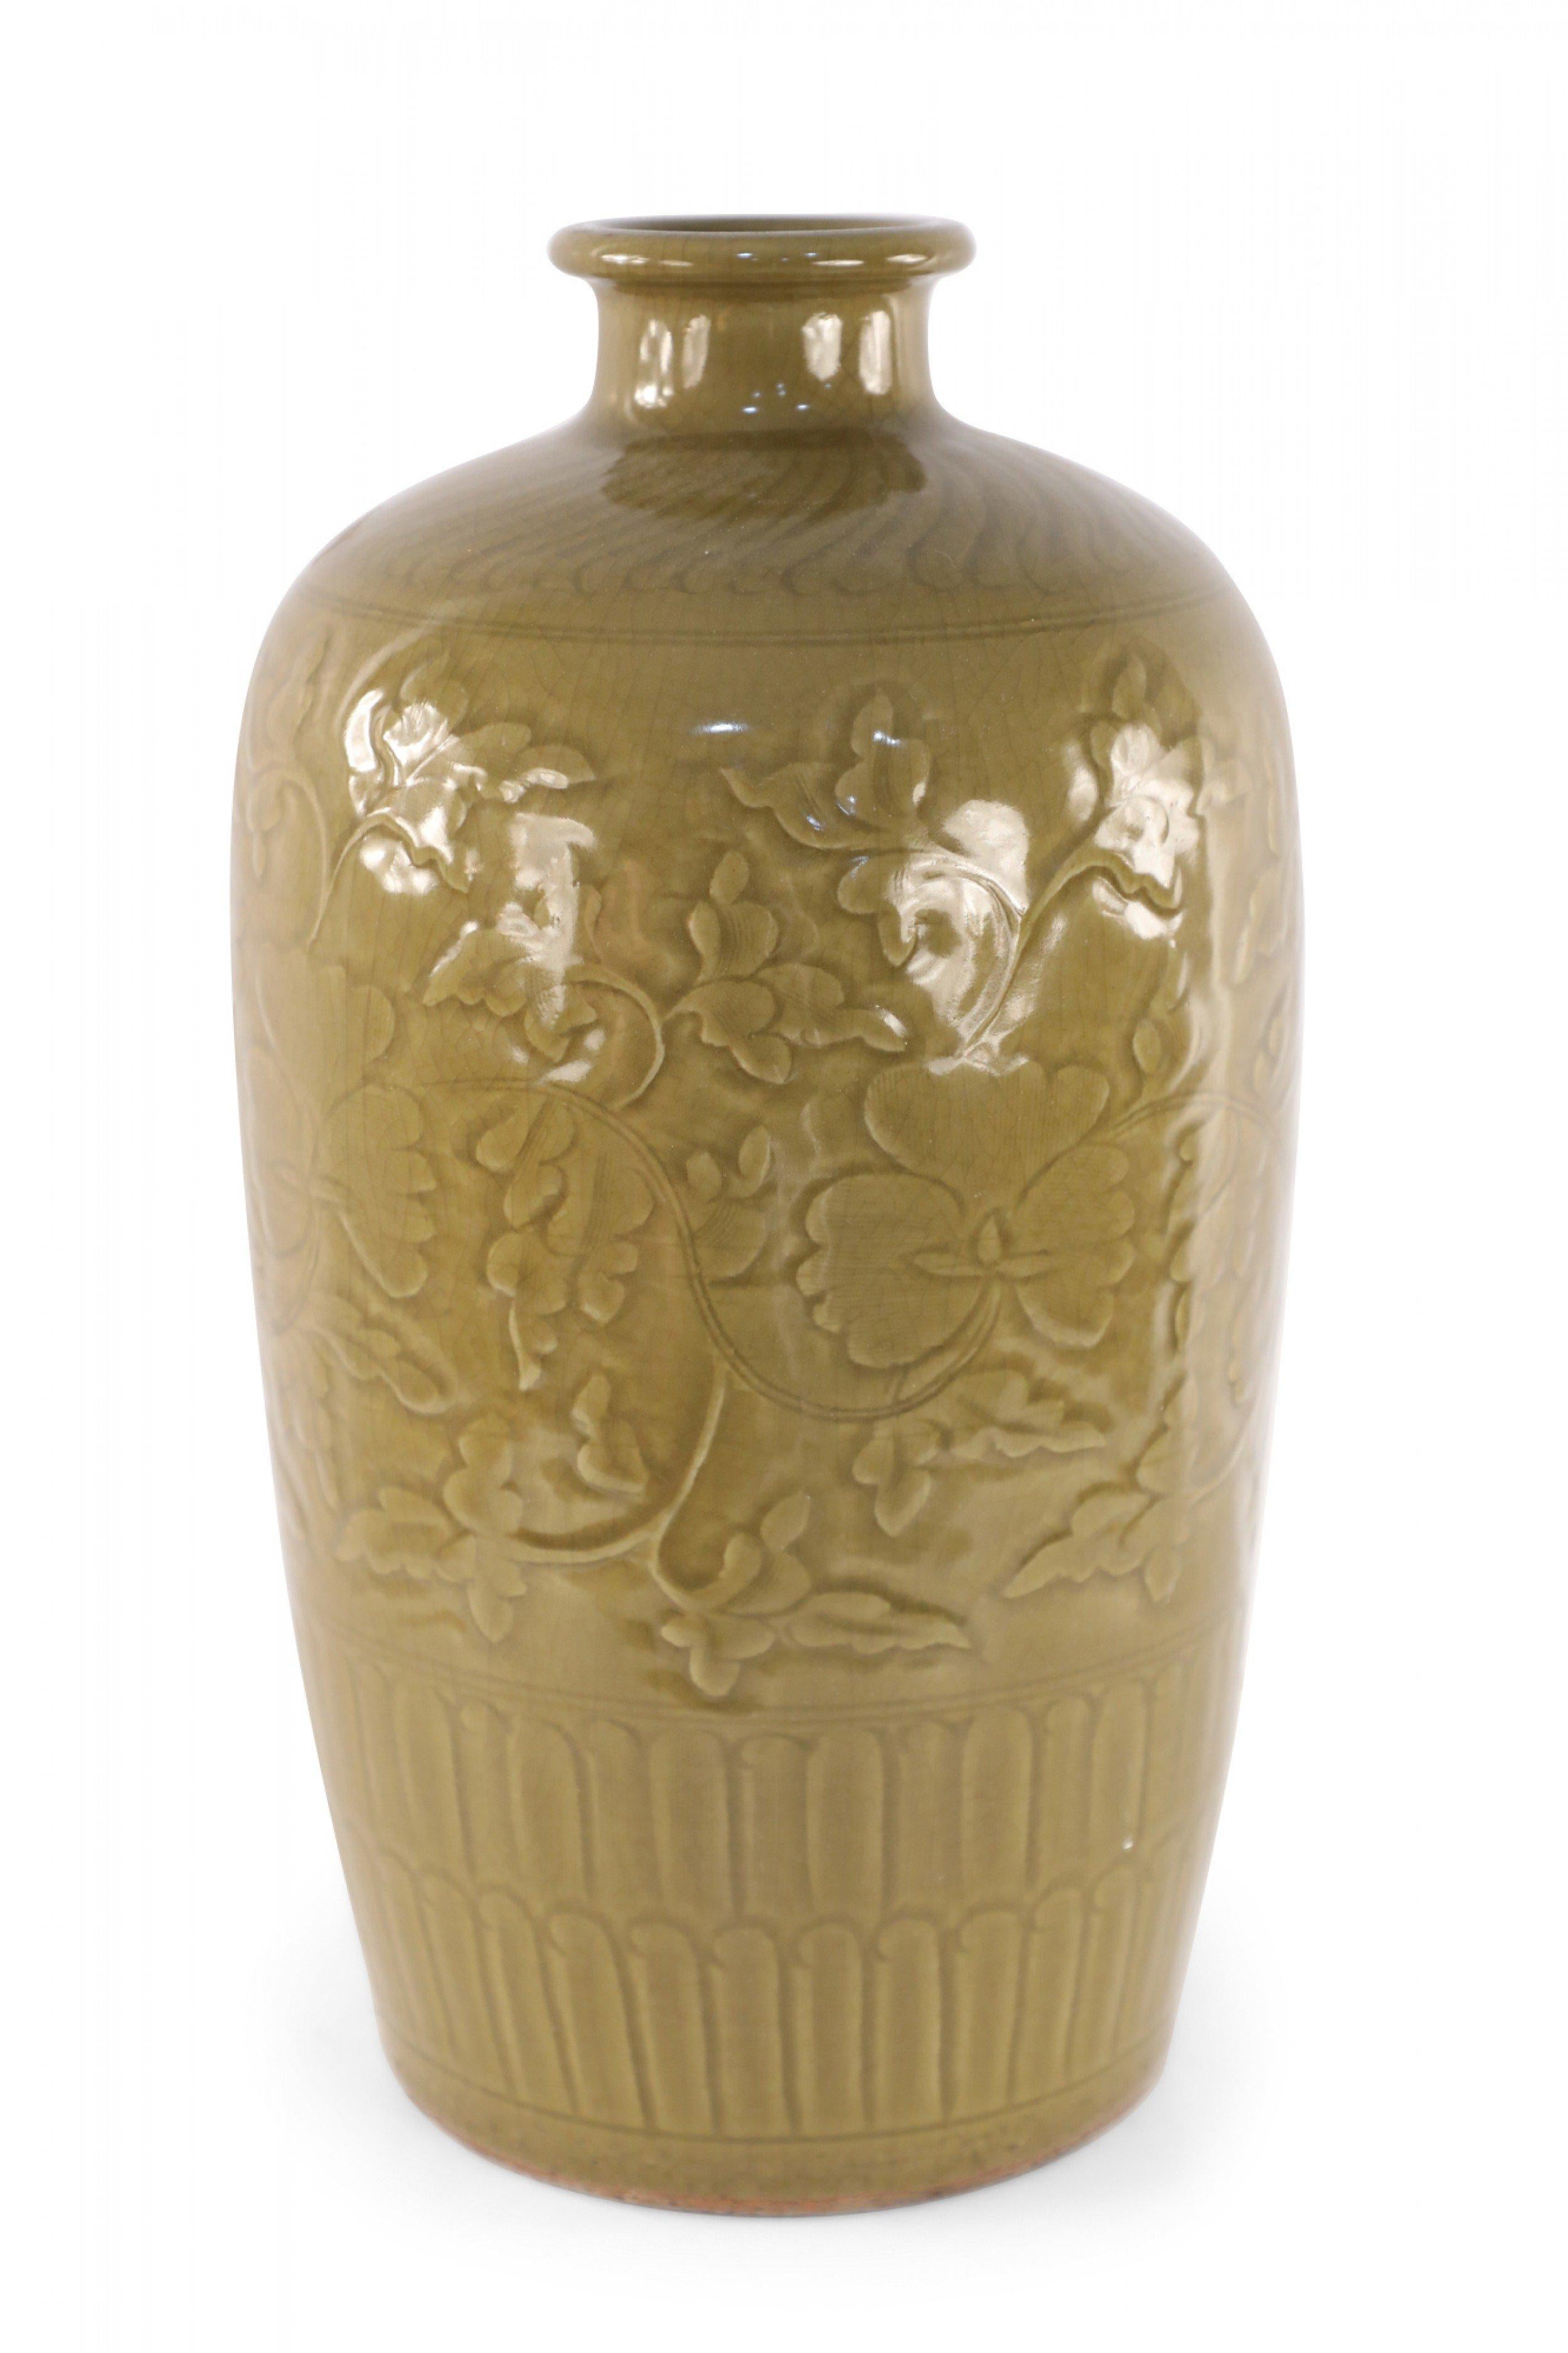 Vase de forme Meiping en porcelaine chinoise de couleur moutarde, sculpté de fleurs en relief et en tons, avec des bandes à motifs autour du sommet et de la base.